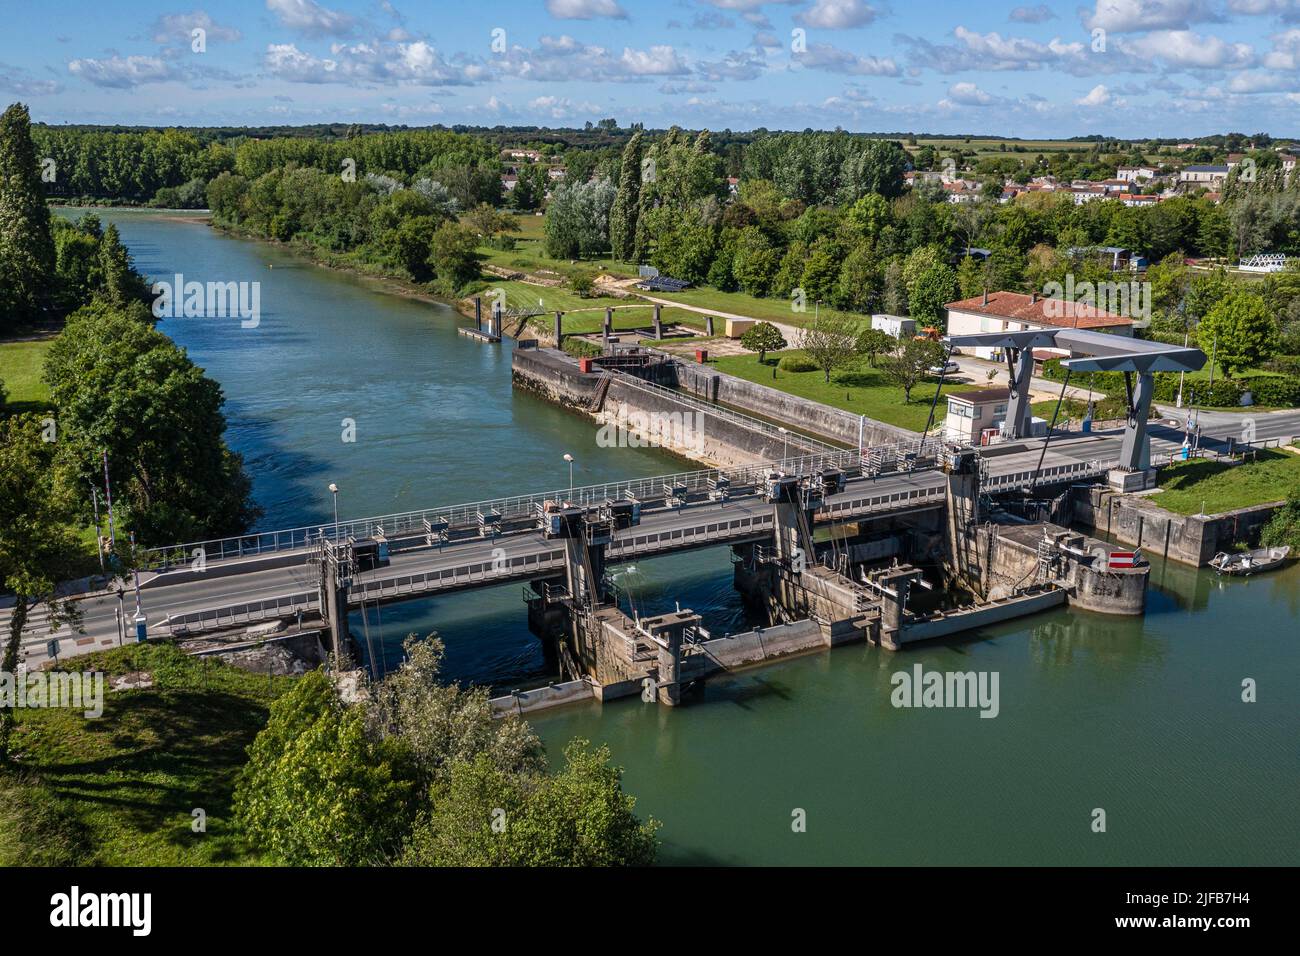 Francia, Charente-Maritime, Saintonge, Saint-Savinien, presa que promueve el flujo de la Charente durante los períodos de inundación y detiene la salinidad traída por las mareas (vista aérea) Foto de stock